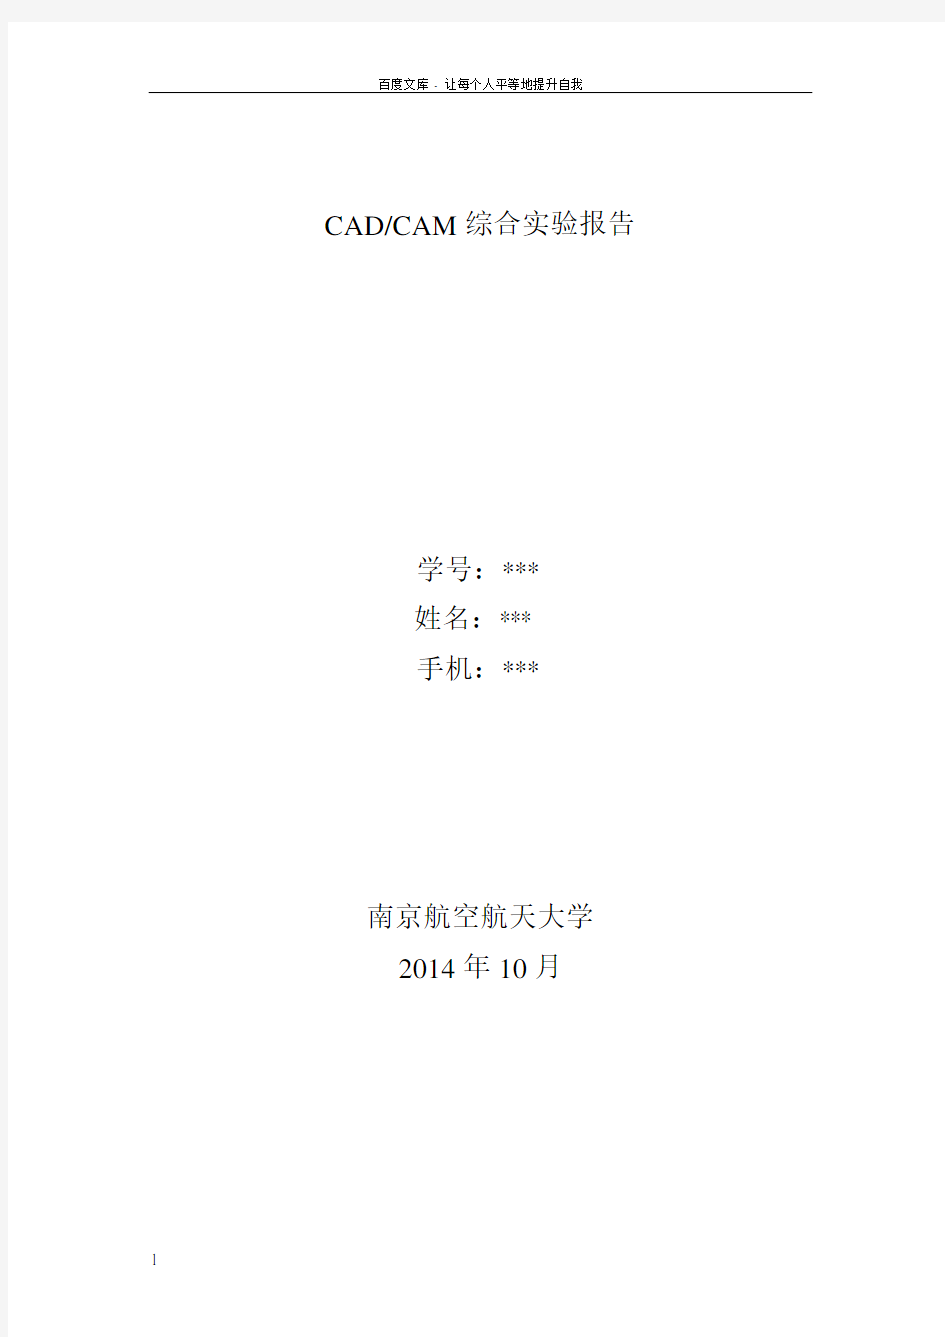 CADCAM综合实验报告catia操作